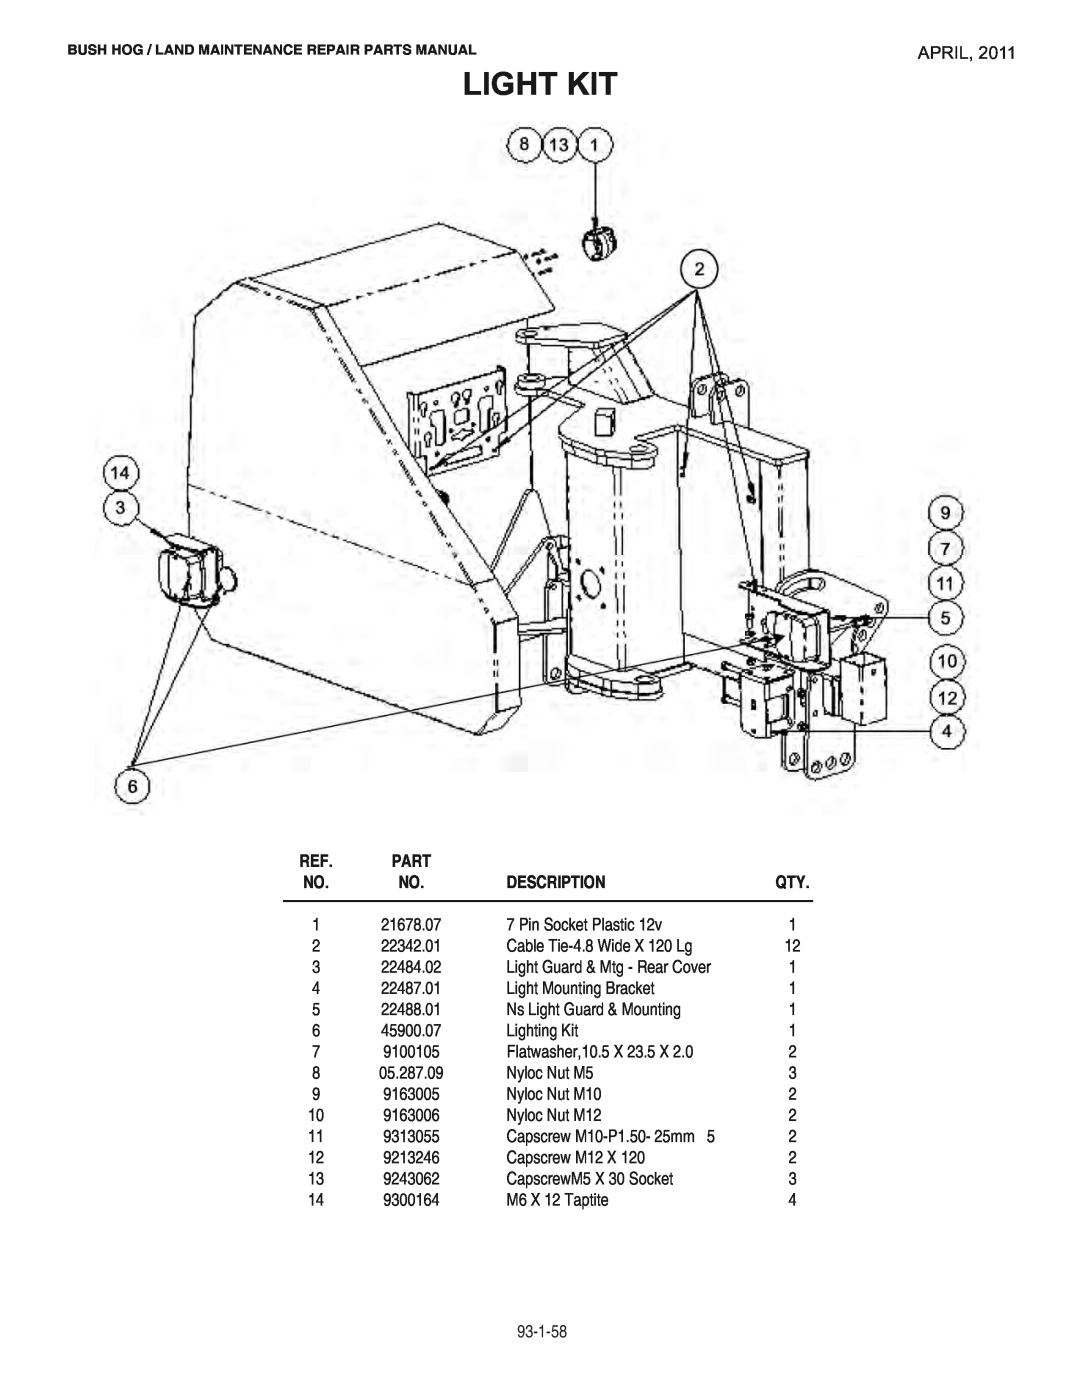 Bush Hog RMB1865E manual Light Kit, April, Description 